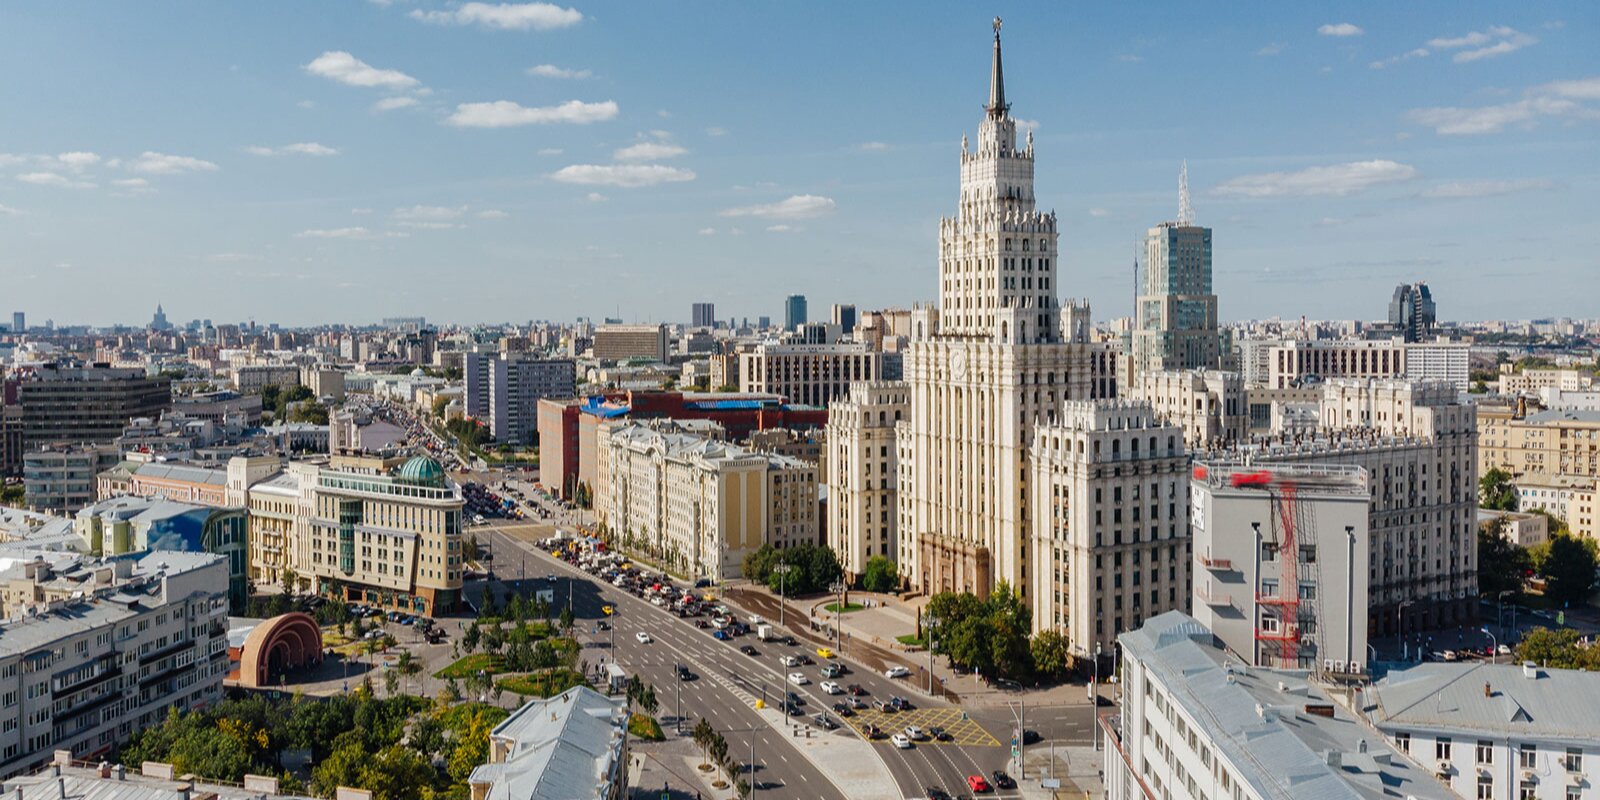 Перед специалистами фонда поставили задачу полного сохранения внешнего исторического облика здания. Фото: сайт мэра Москвы